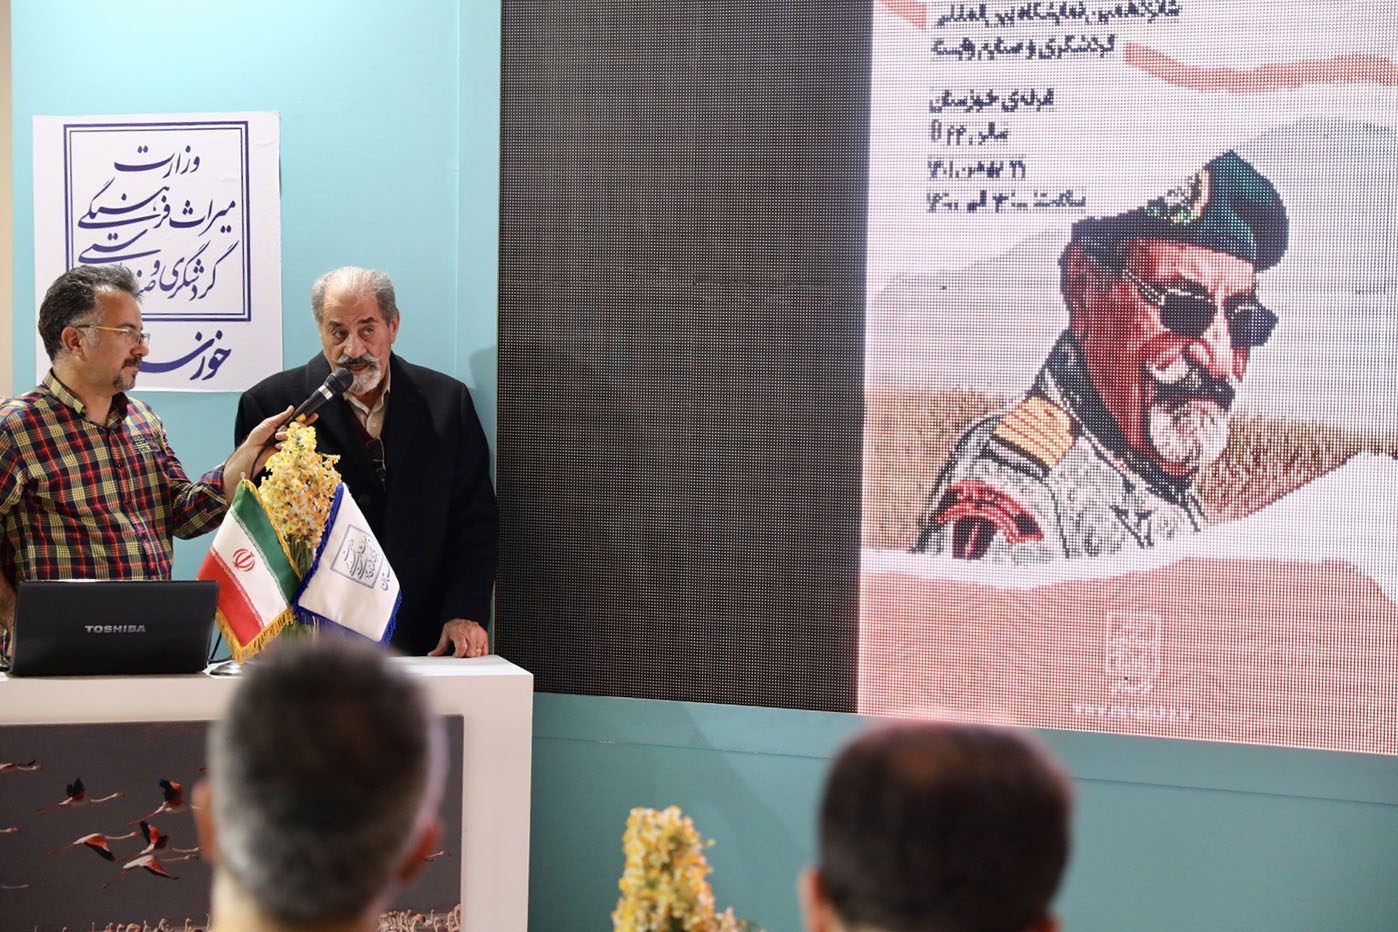 نشست بازگویی خاطرات دوران دفاع مقدس در نمایشگاه گردشگری و صنایع وابسته تهران